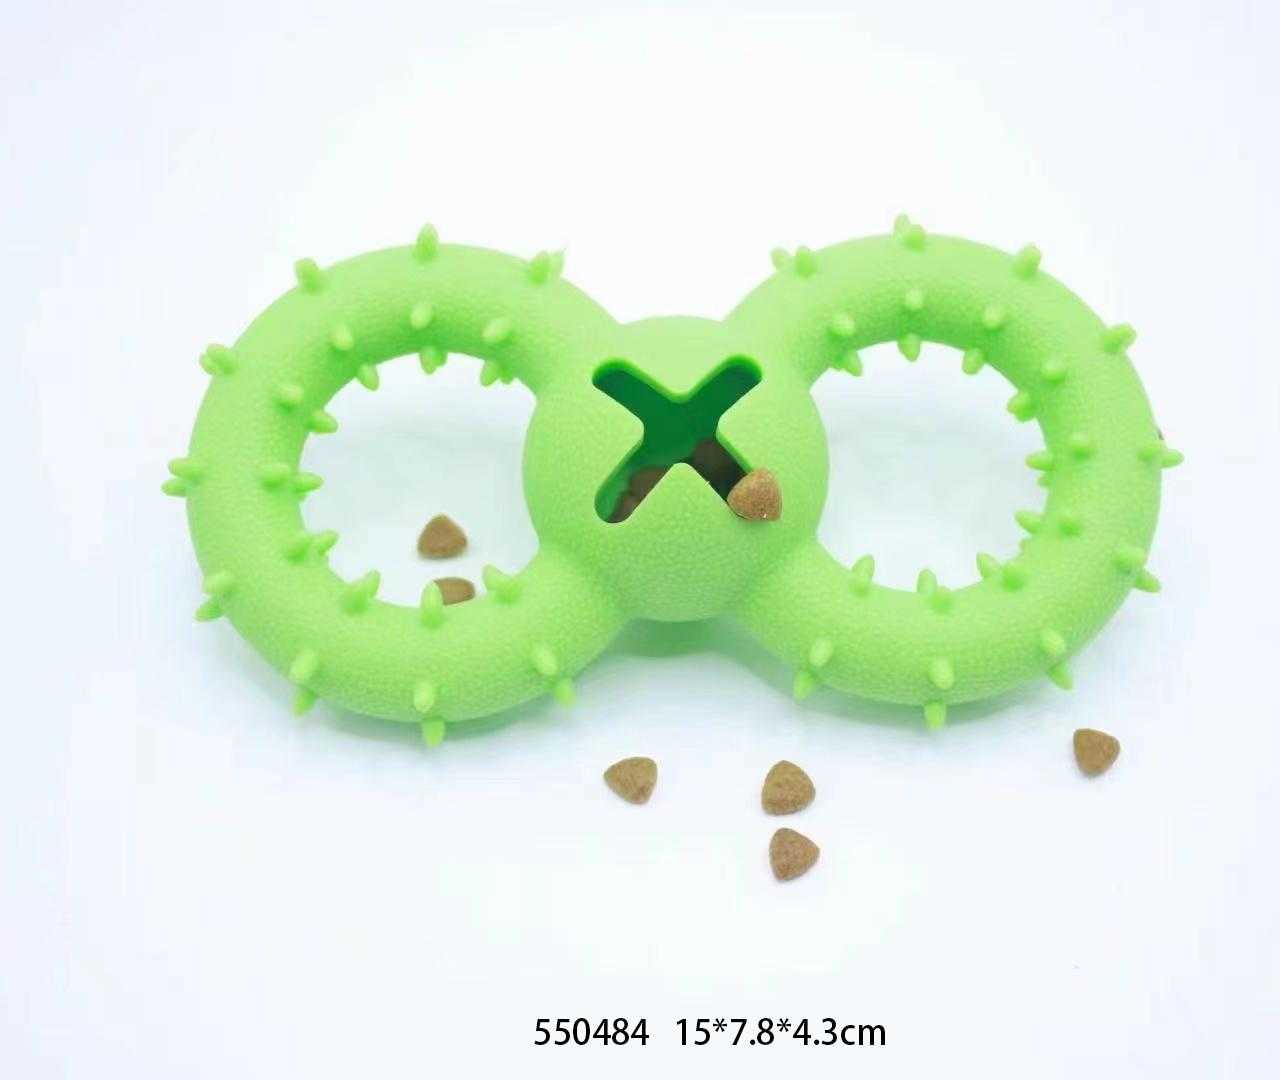 Dog treat toy - 15x7.8x4cm - 550484